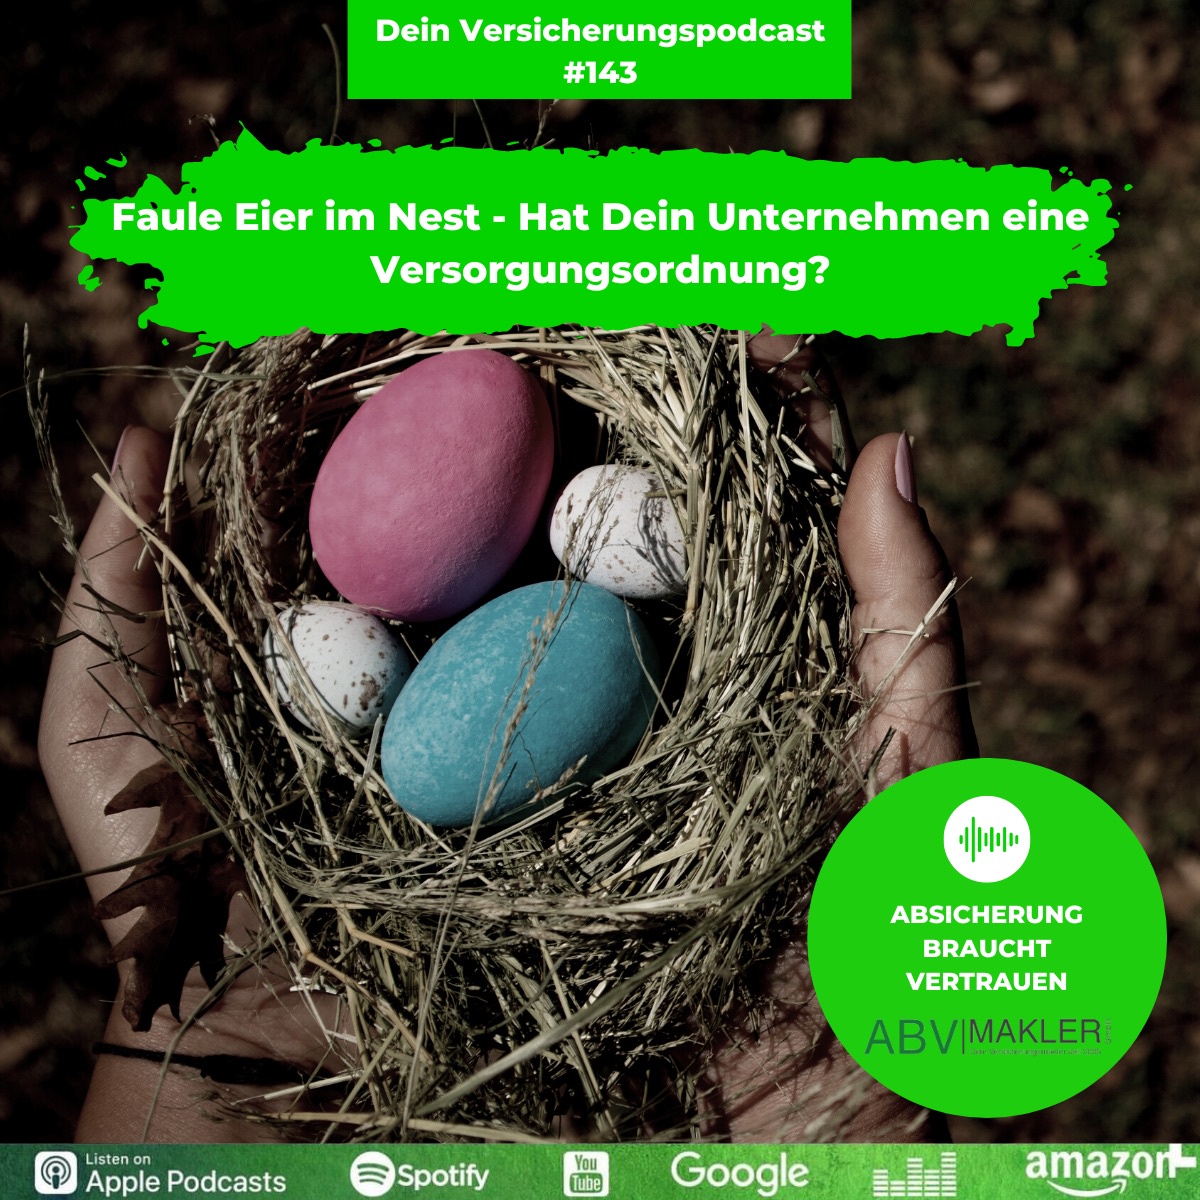 Faule Eier im Nest - Hat Dein Unternehmen eine Versorgungsordnung?